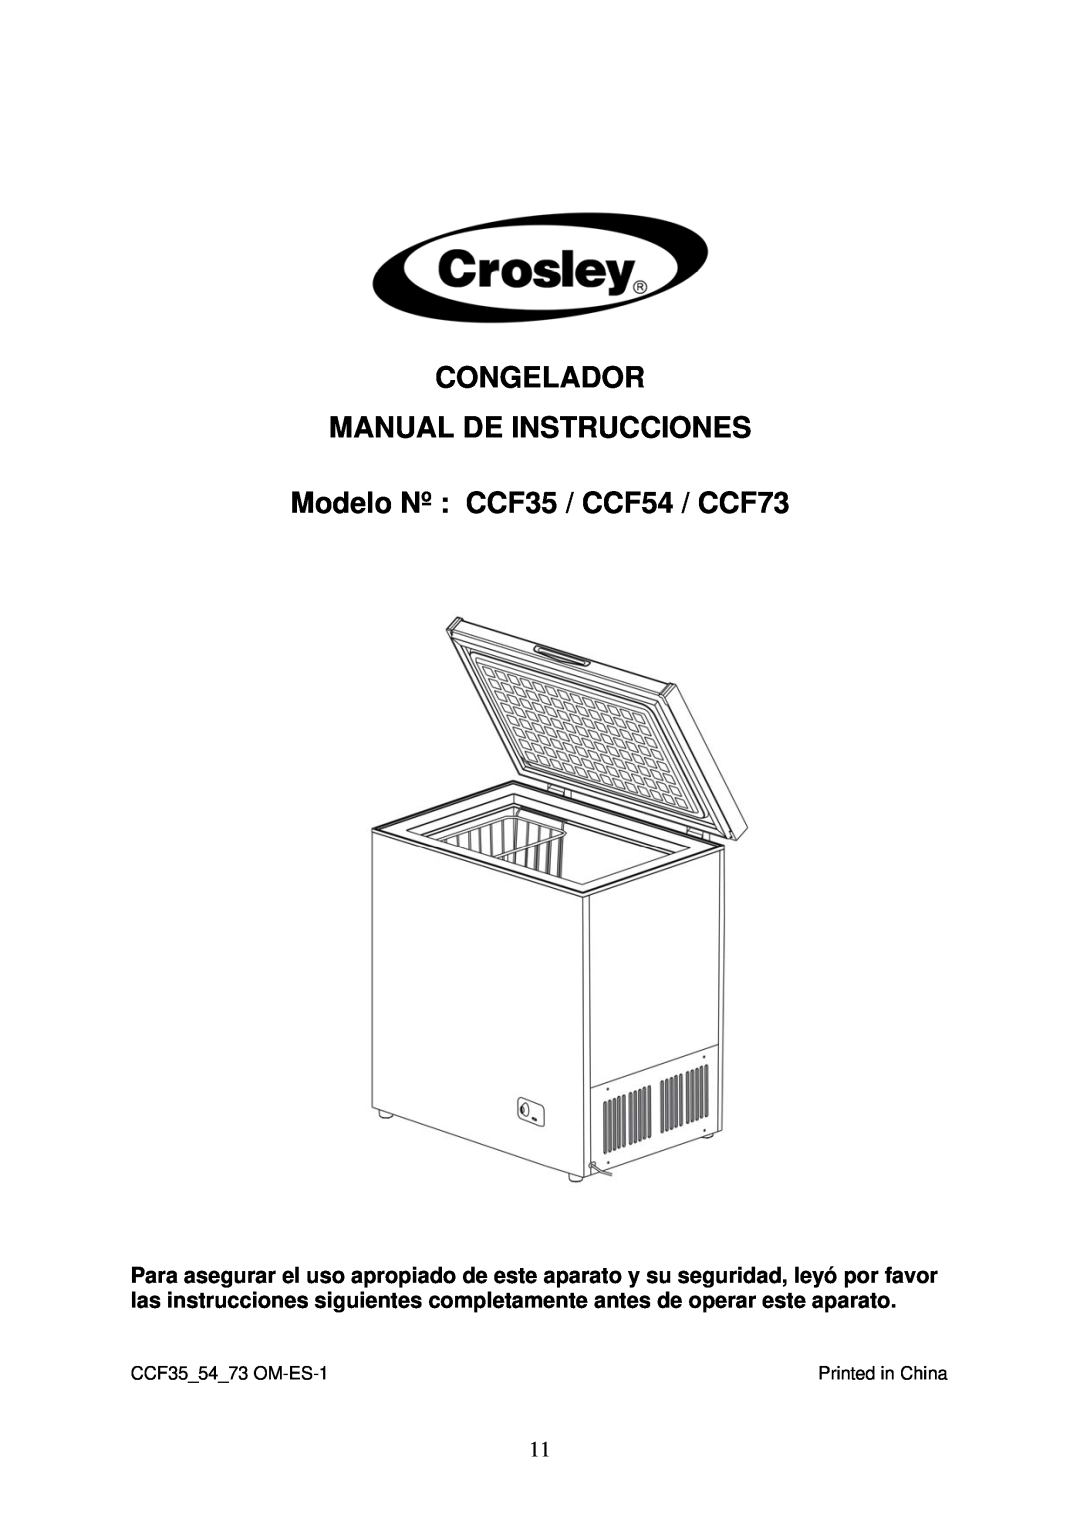 Crosley instruction manual Congelador Manual De Instrucciones, Modelo Nº CCF35 / CCF54 / CCF73 